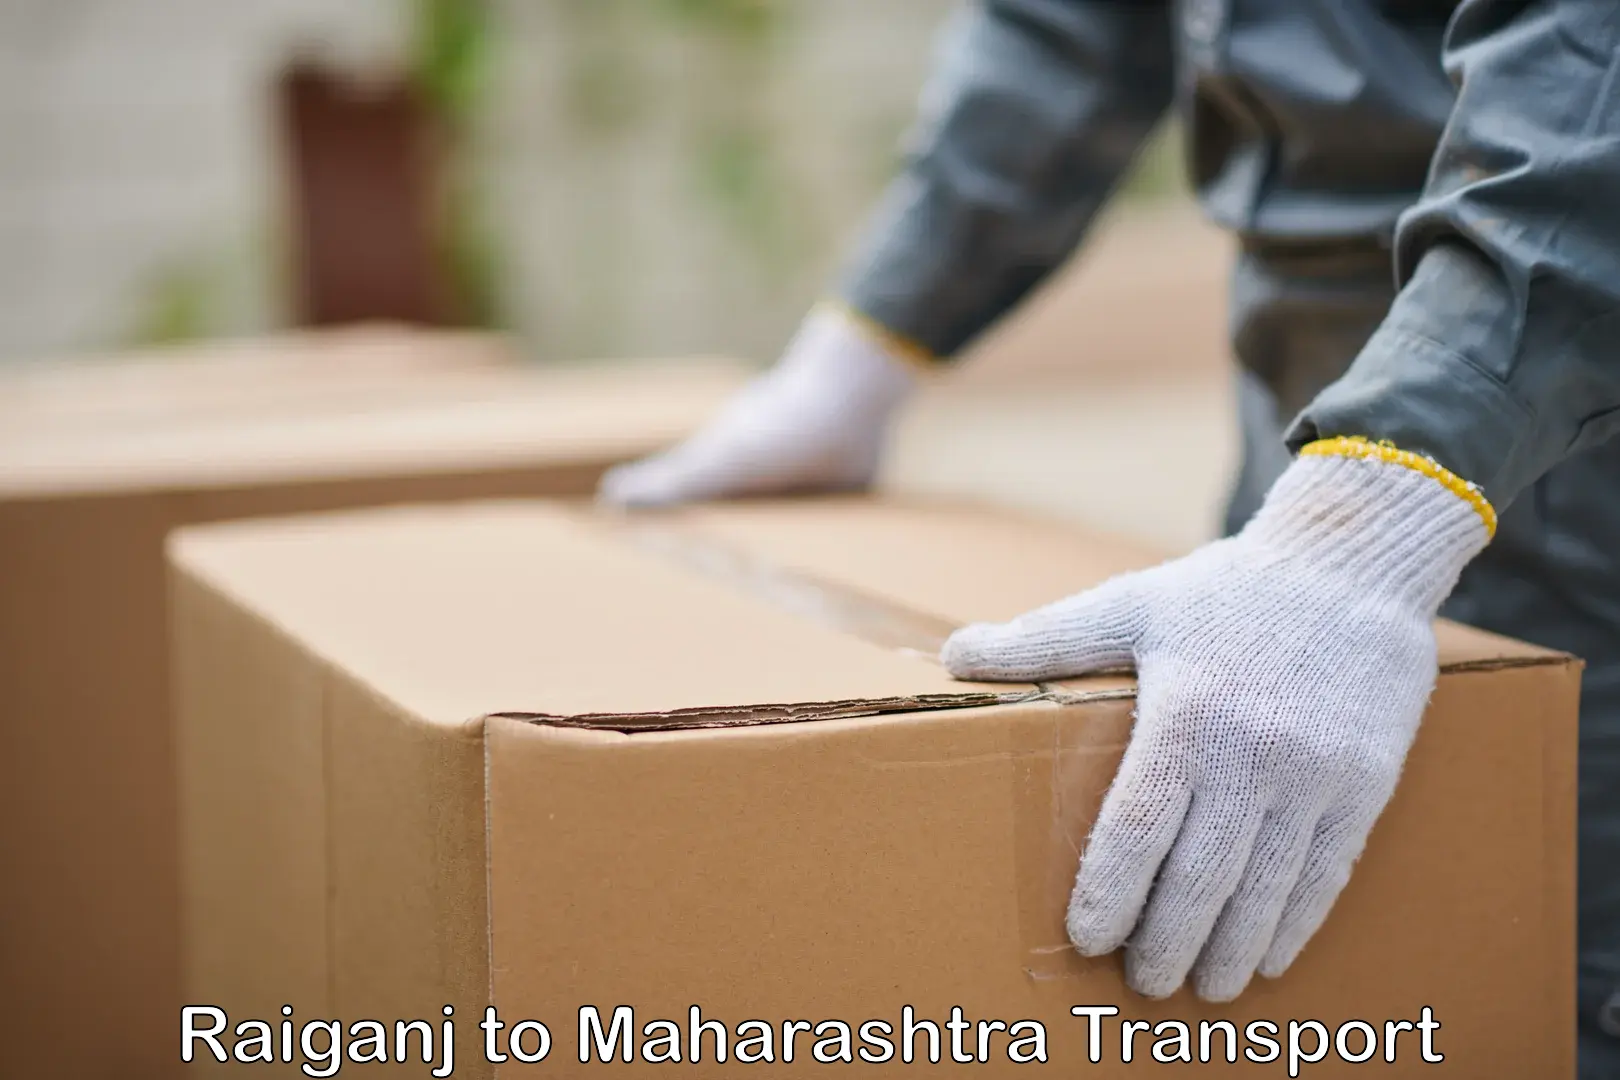 Shipping services Raiganj to Maharashtra